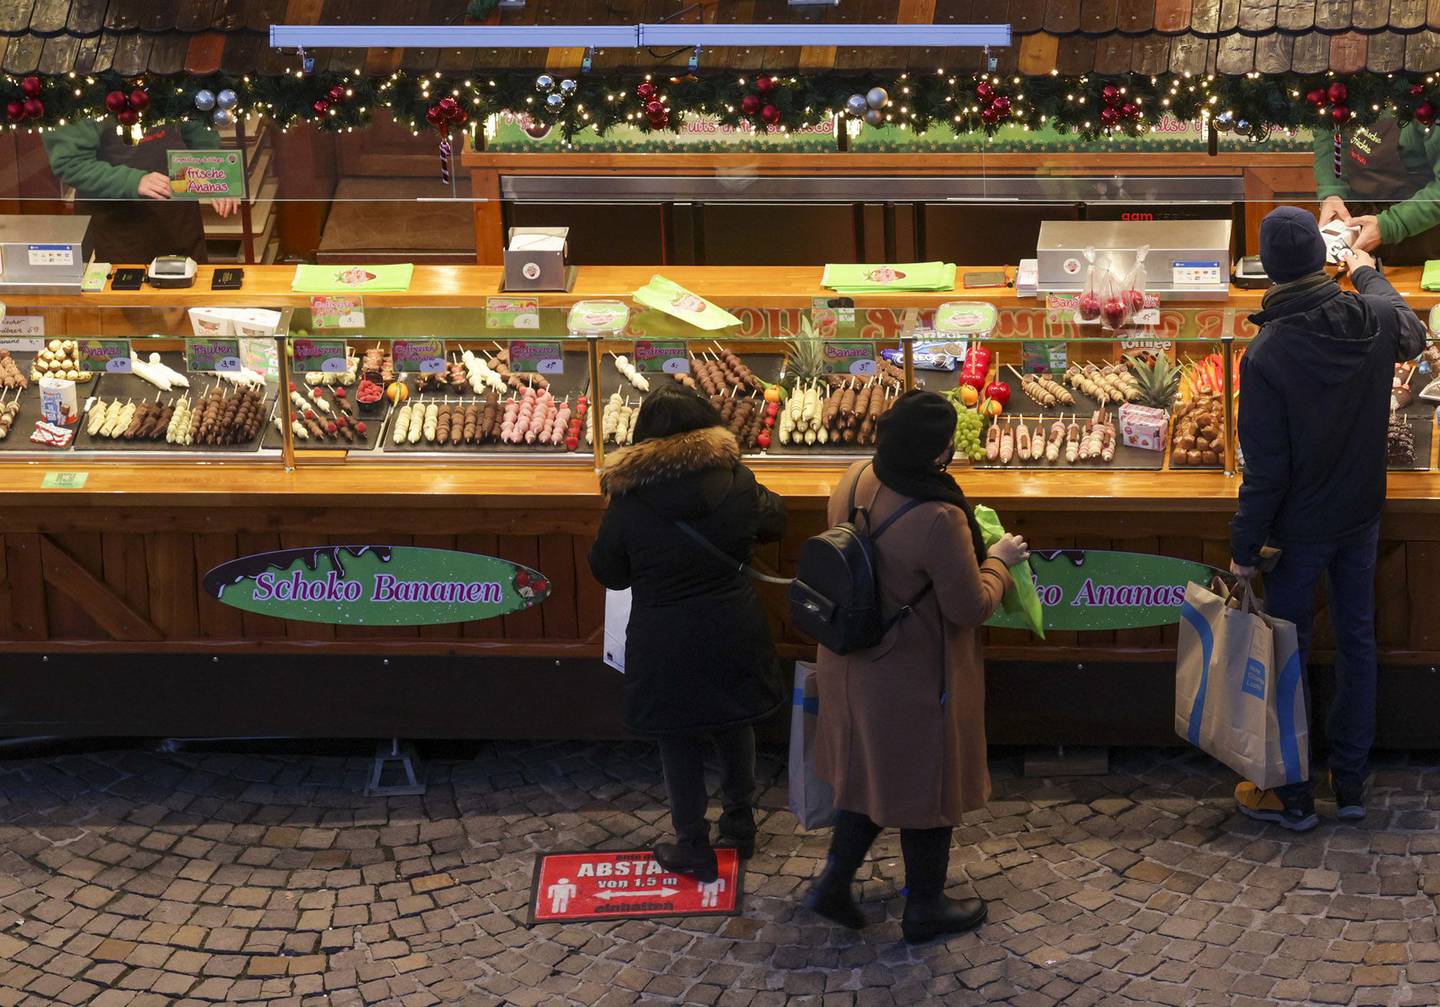 Carteles de distanciamiento social en el suelo advierten a los visitantes de que mantengan una distancia de seguridad en un mercado navideño de Fráncfort.